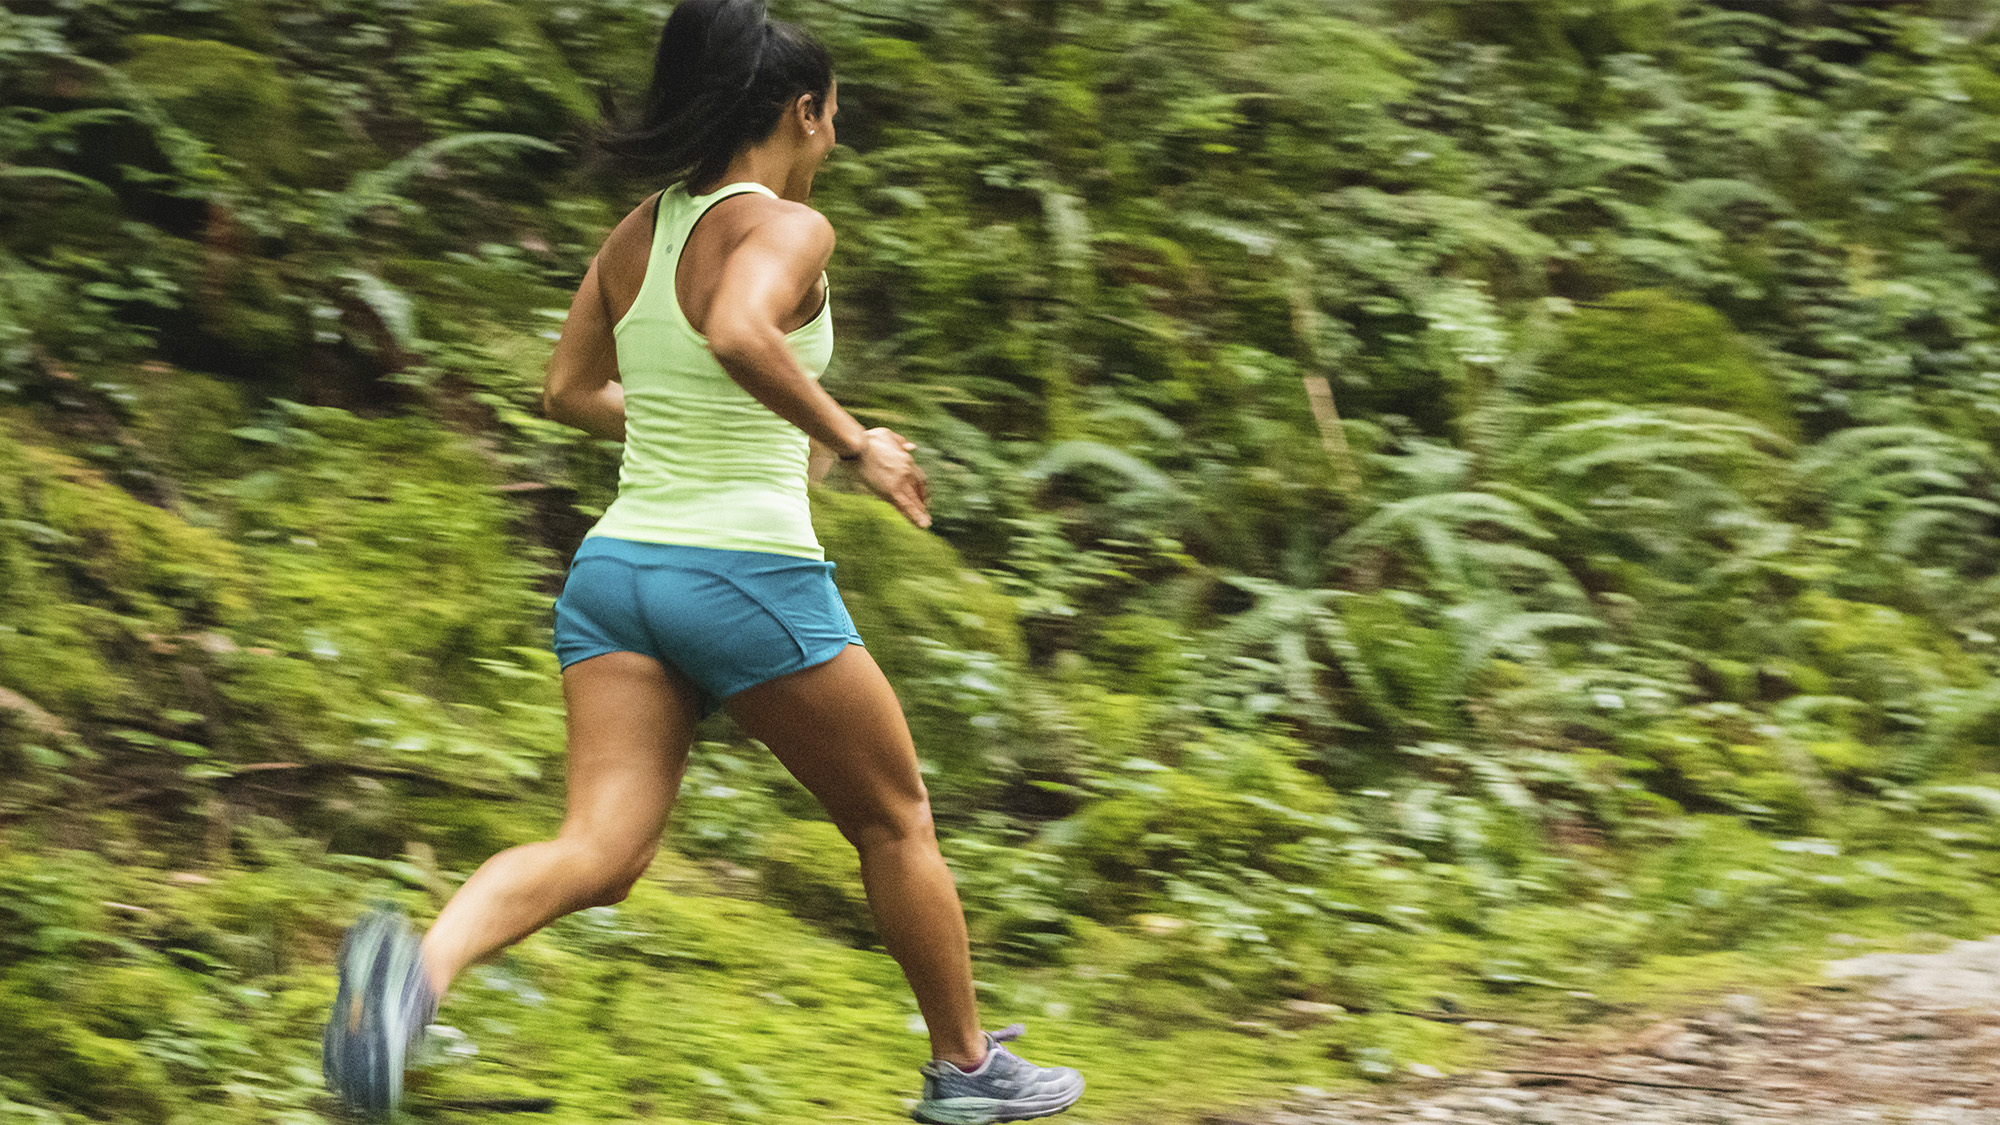 Hacer ejercicio moderado, como correr, entre 1 y 5h a la semana conlleva los máximos beneficios para la salud Foto deGreg Rosenke on Unsplash